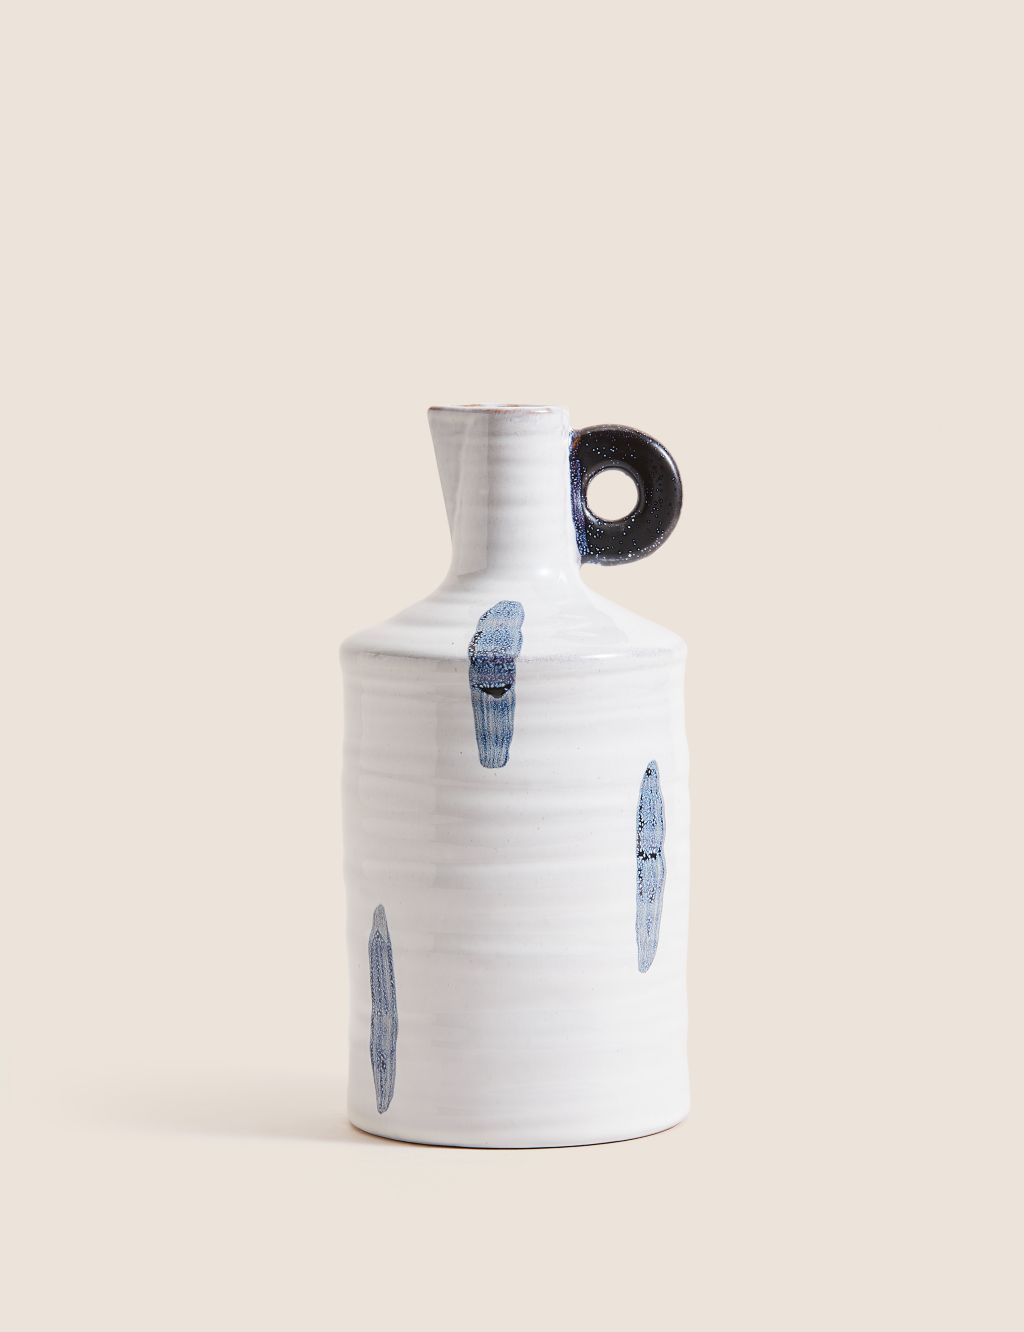 Painted Glaze Ceramic Bottle Vase image 2